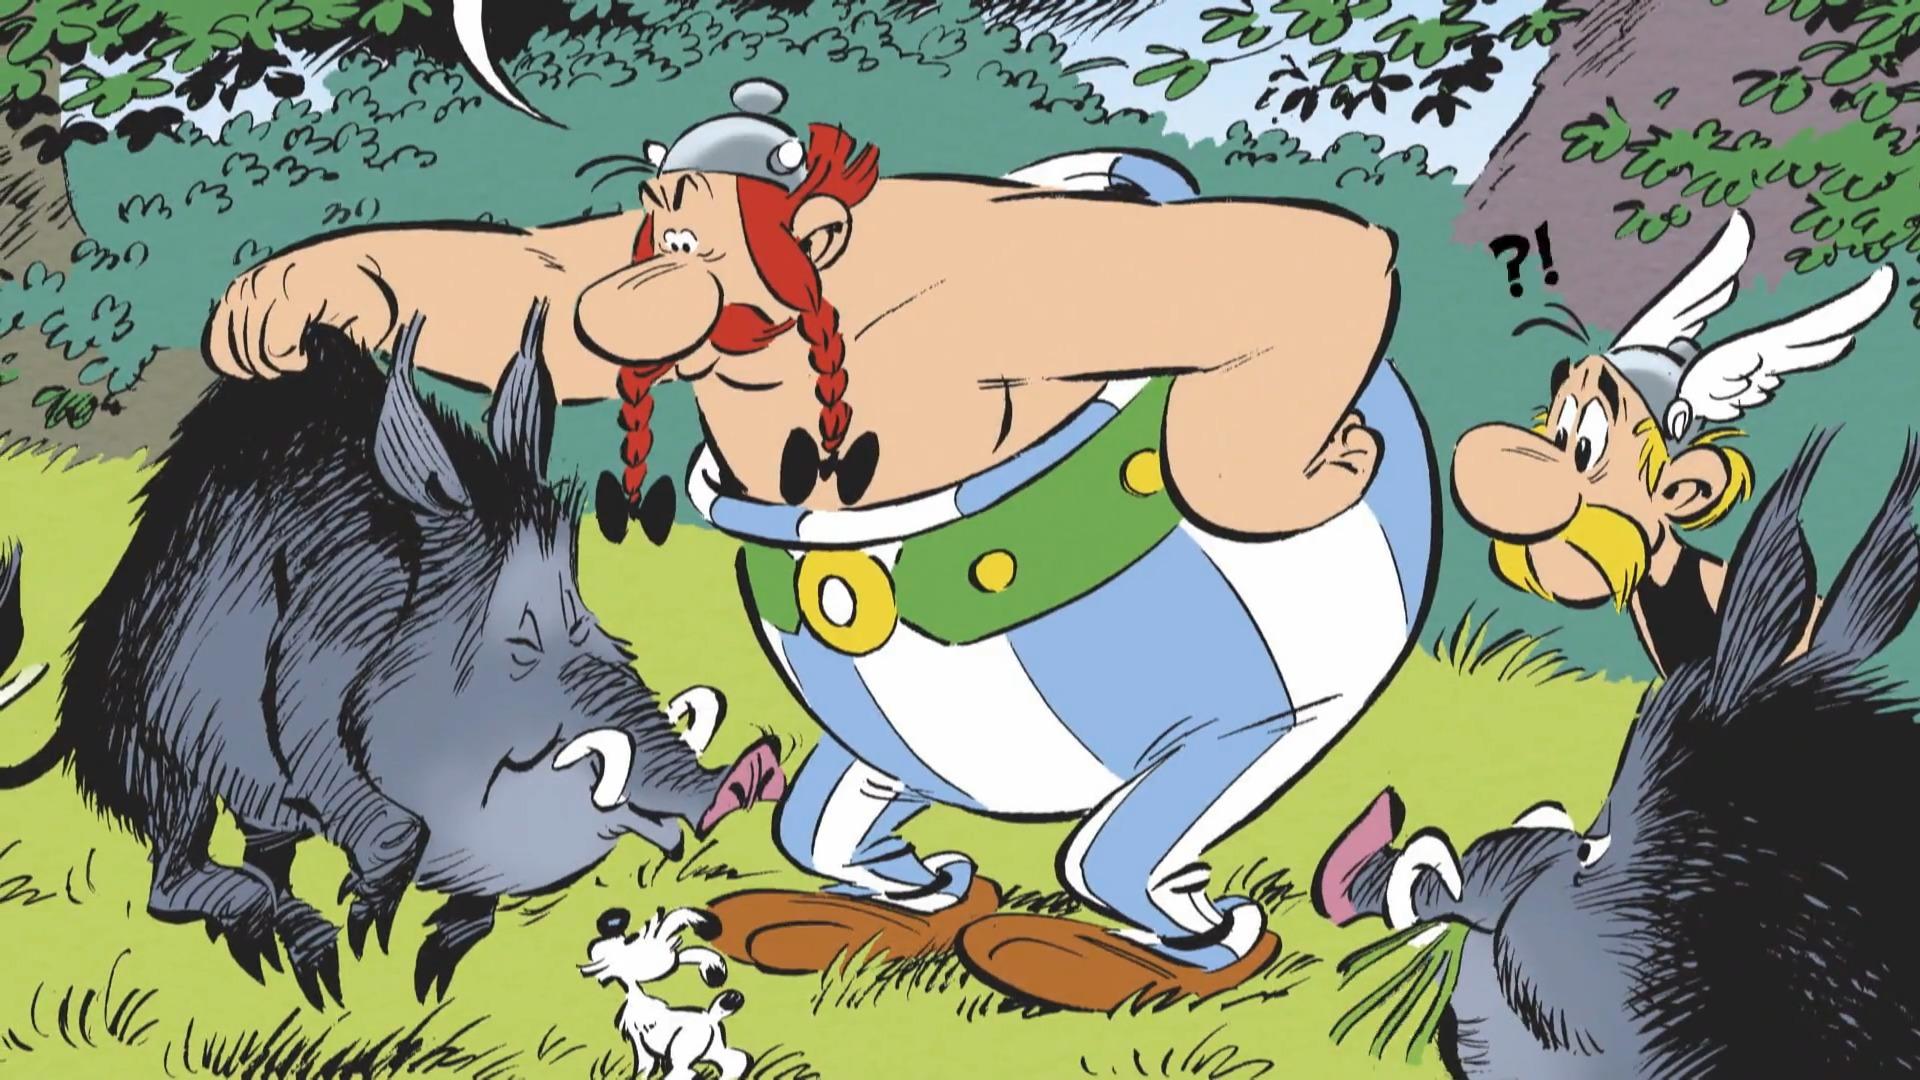 Der neue Asterix-Band "Die weiße Iris" Band 40 jetzt erhältlich